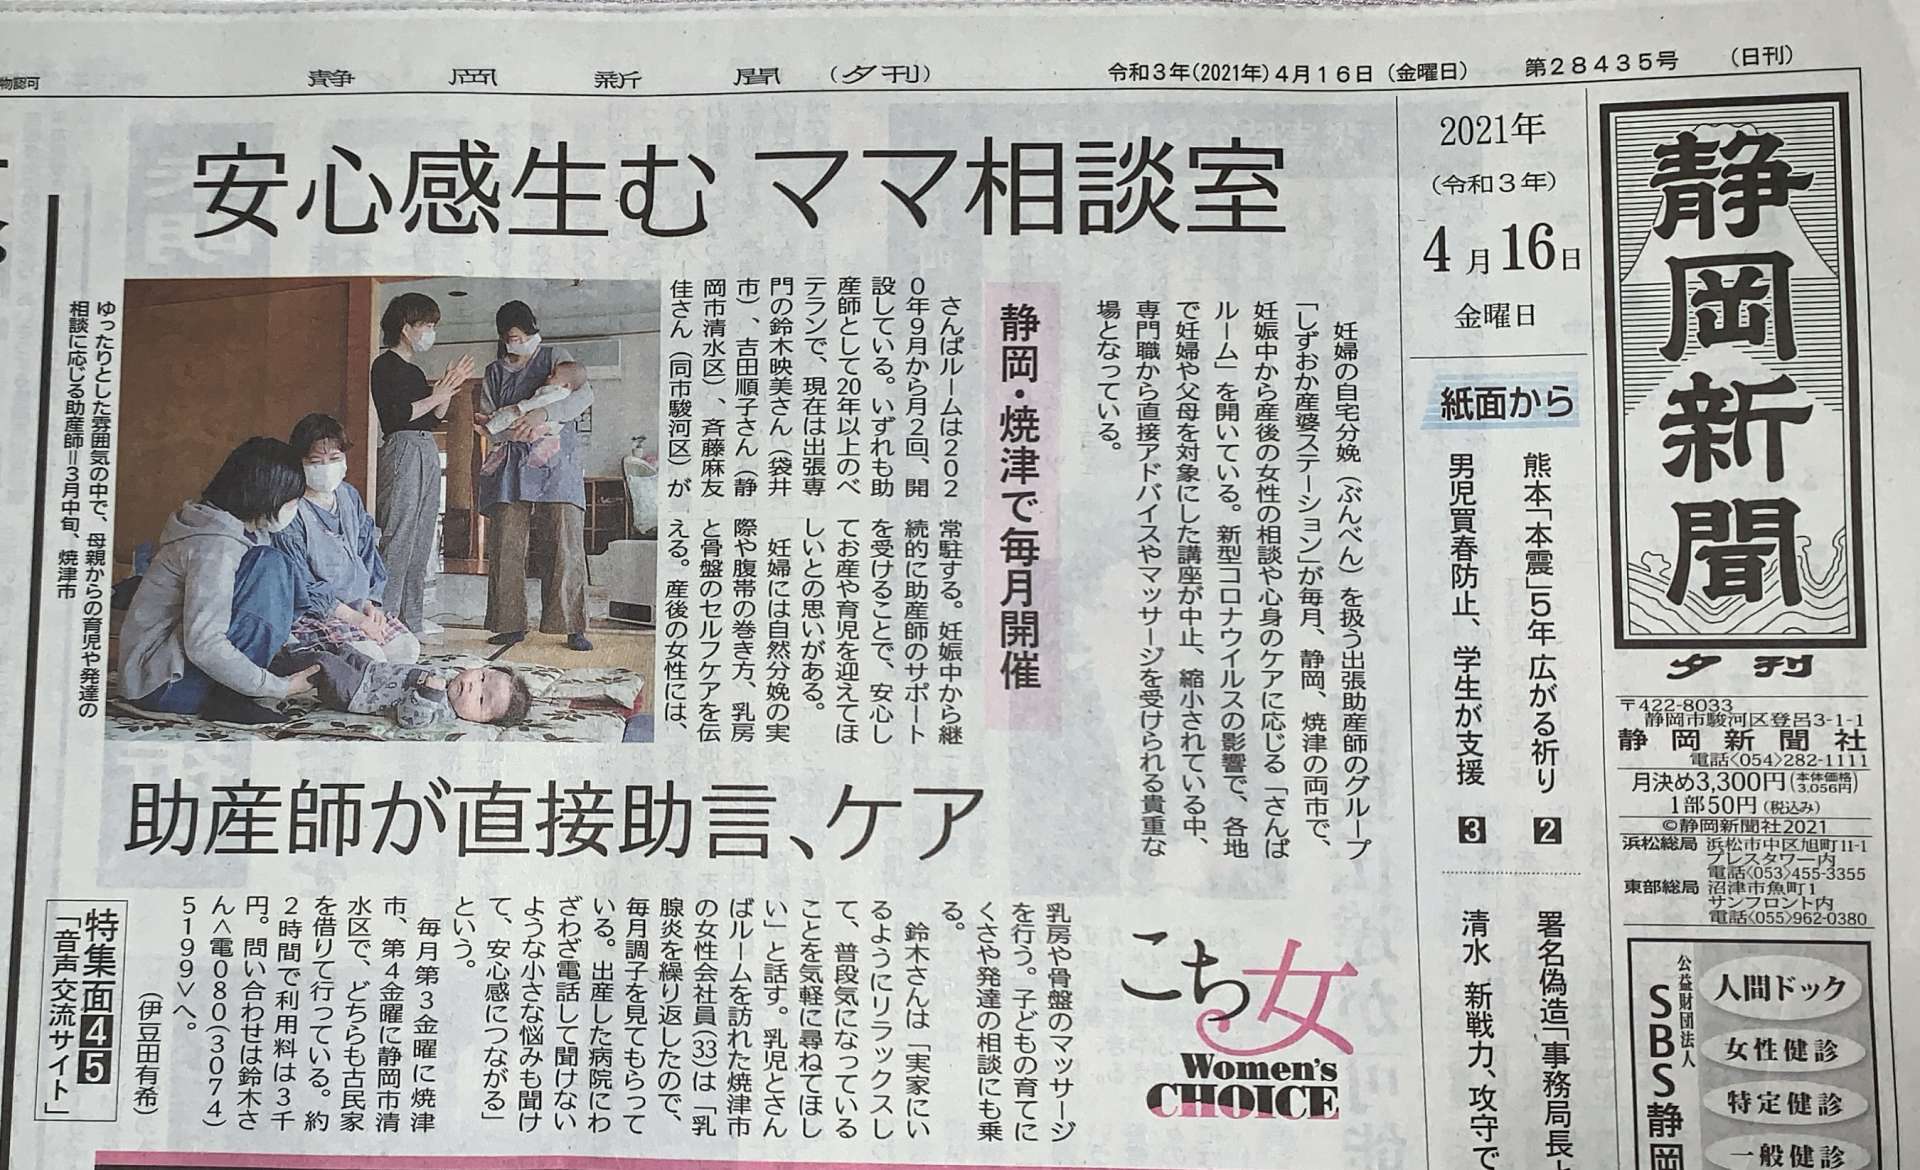 安心感生むママ相談室として静岡新聞に載せて頂きました